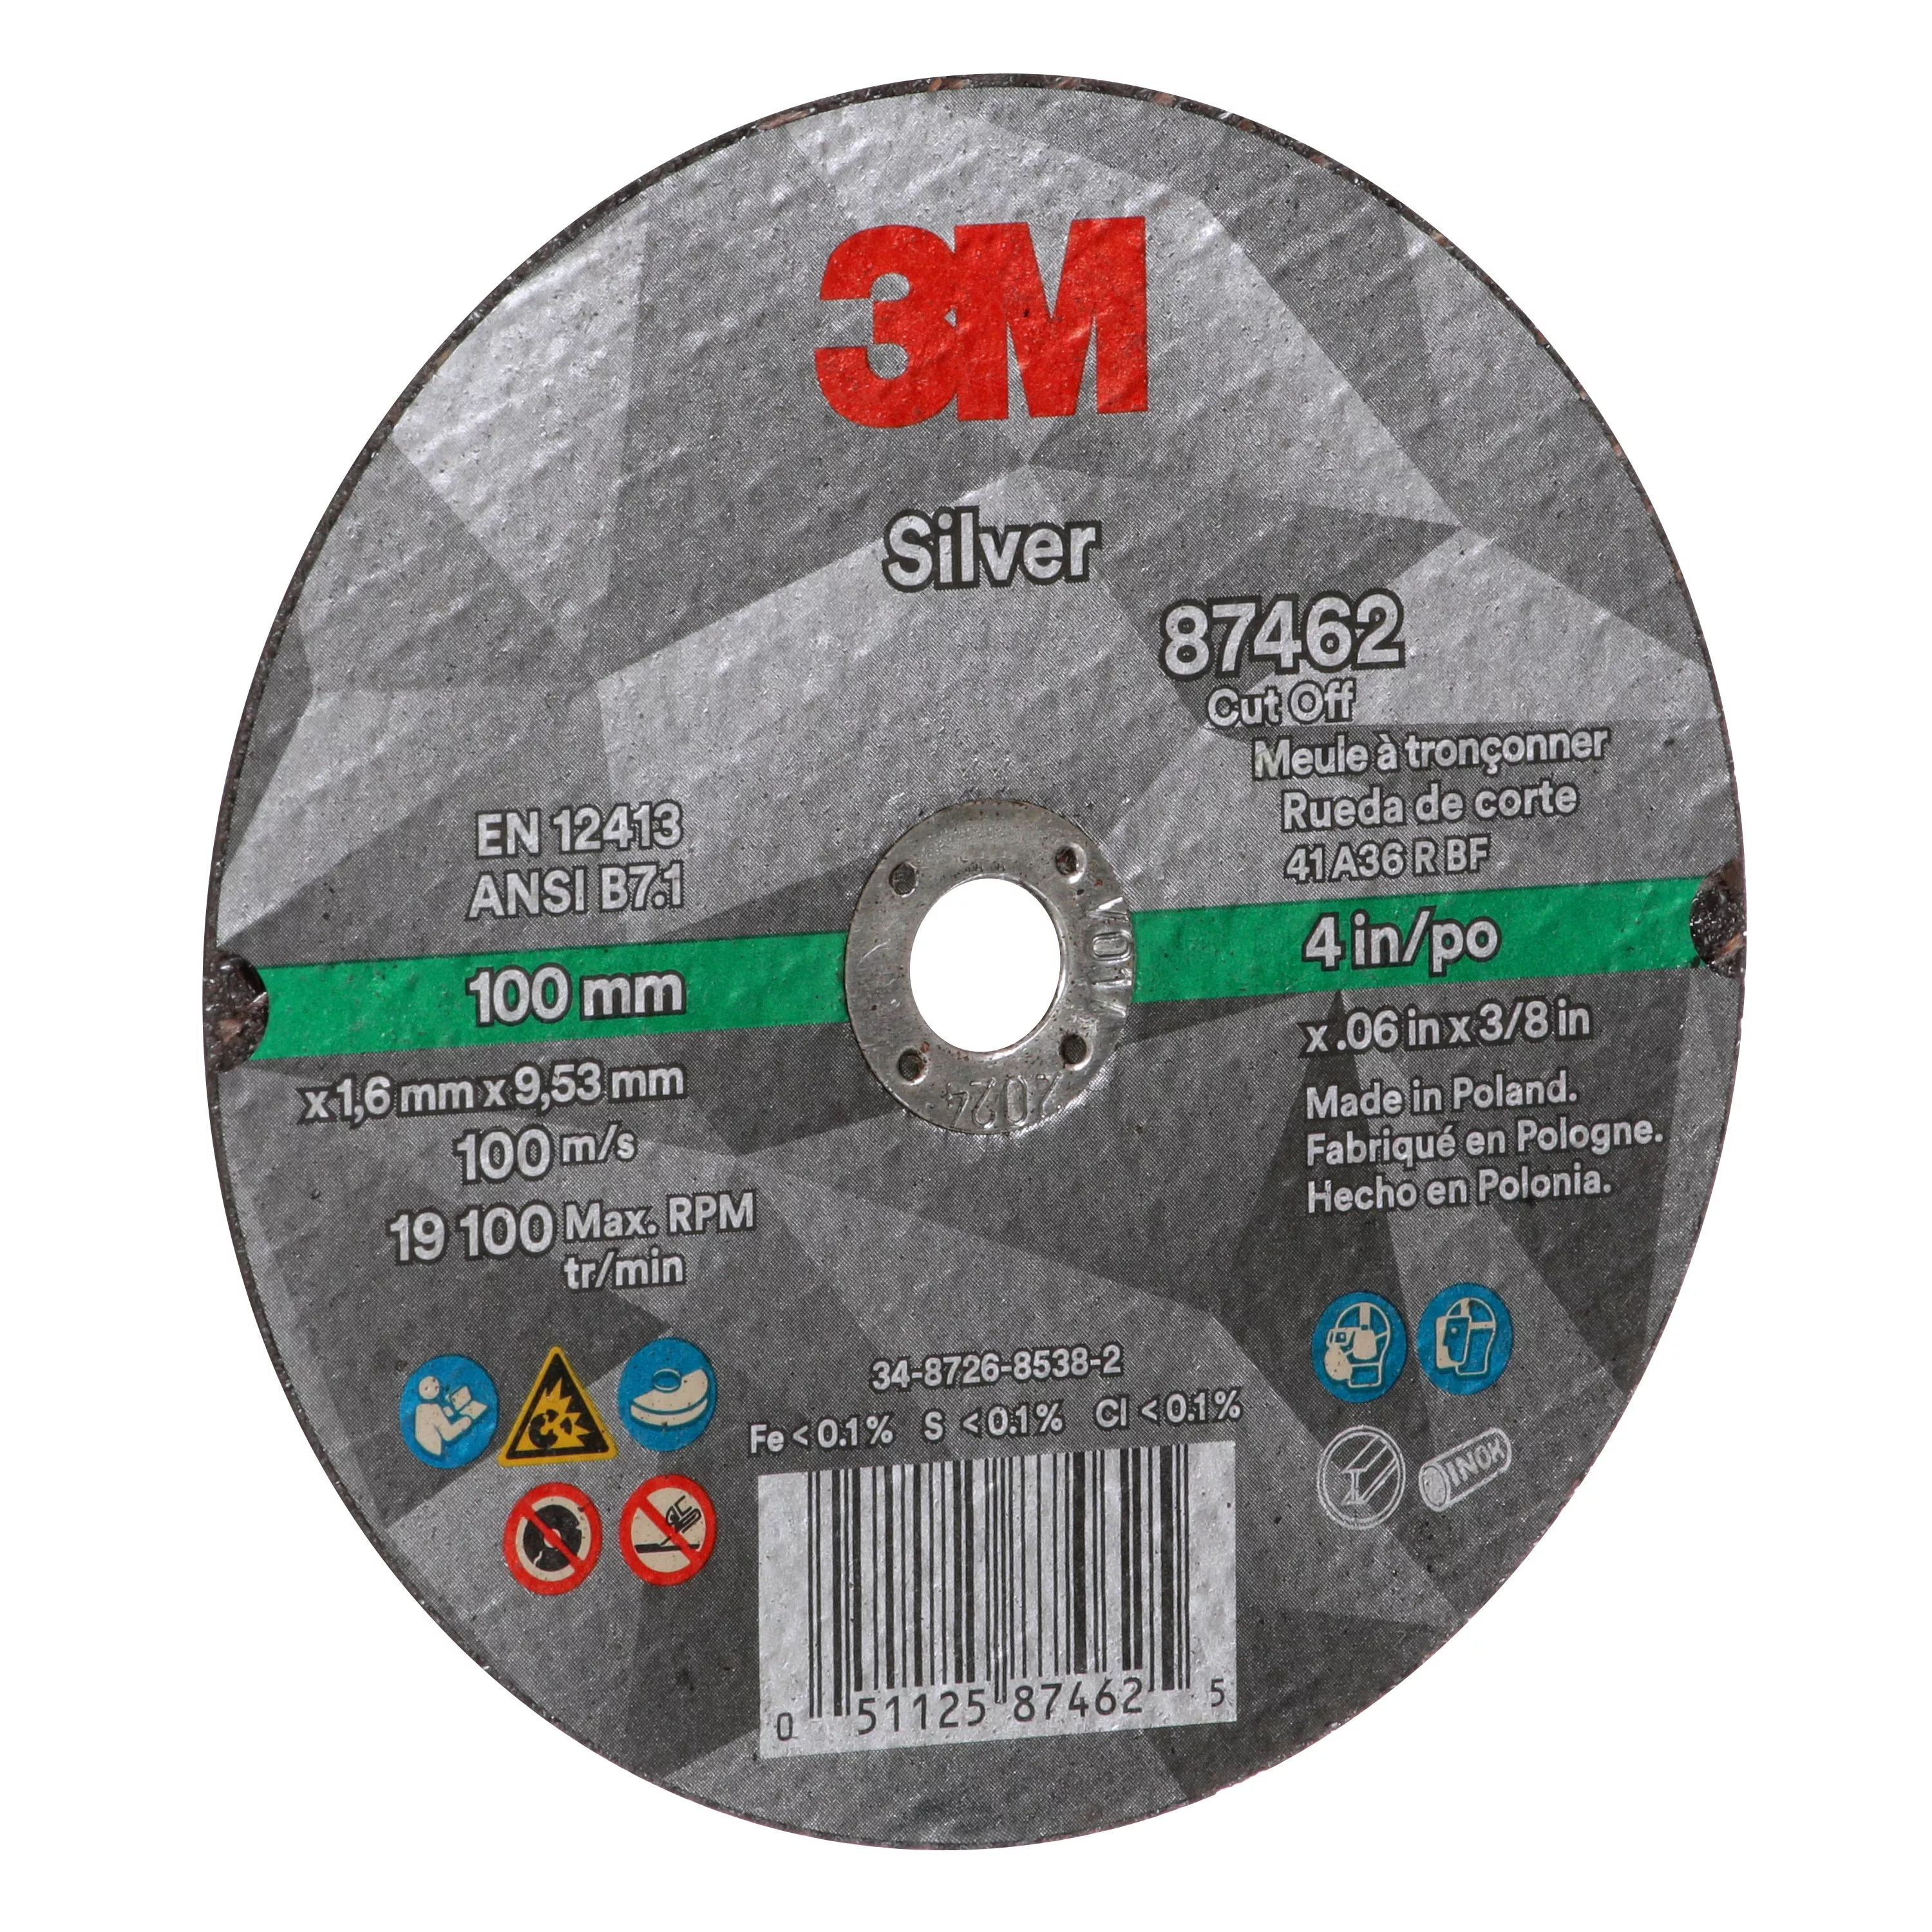 SKU 7100139215 | 3M™ Silver Cut-Off Wheel